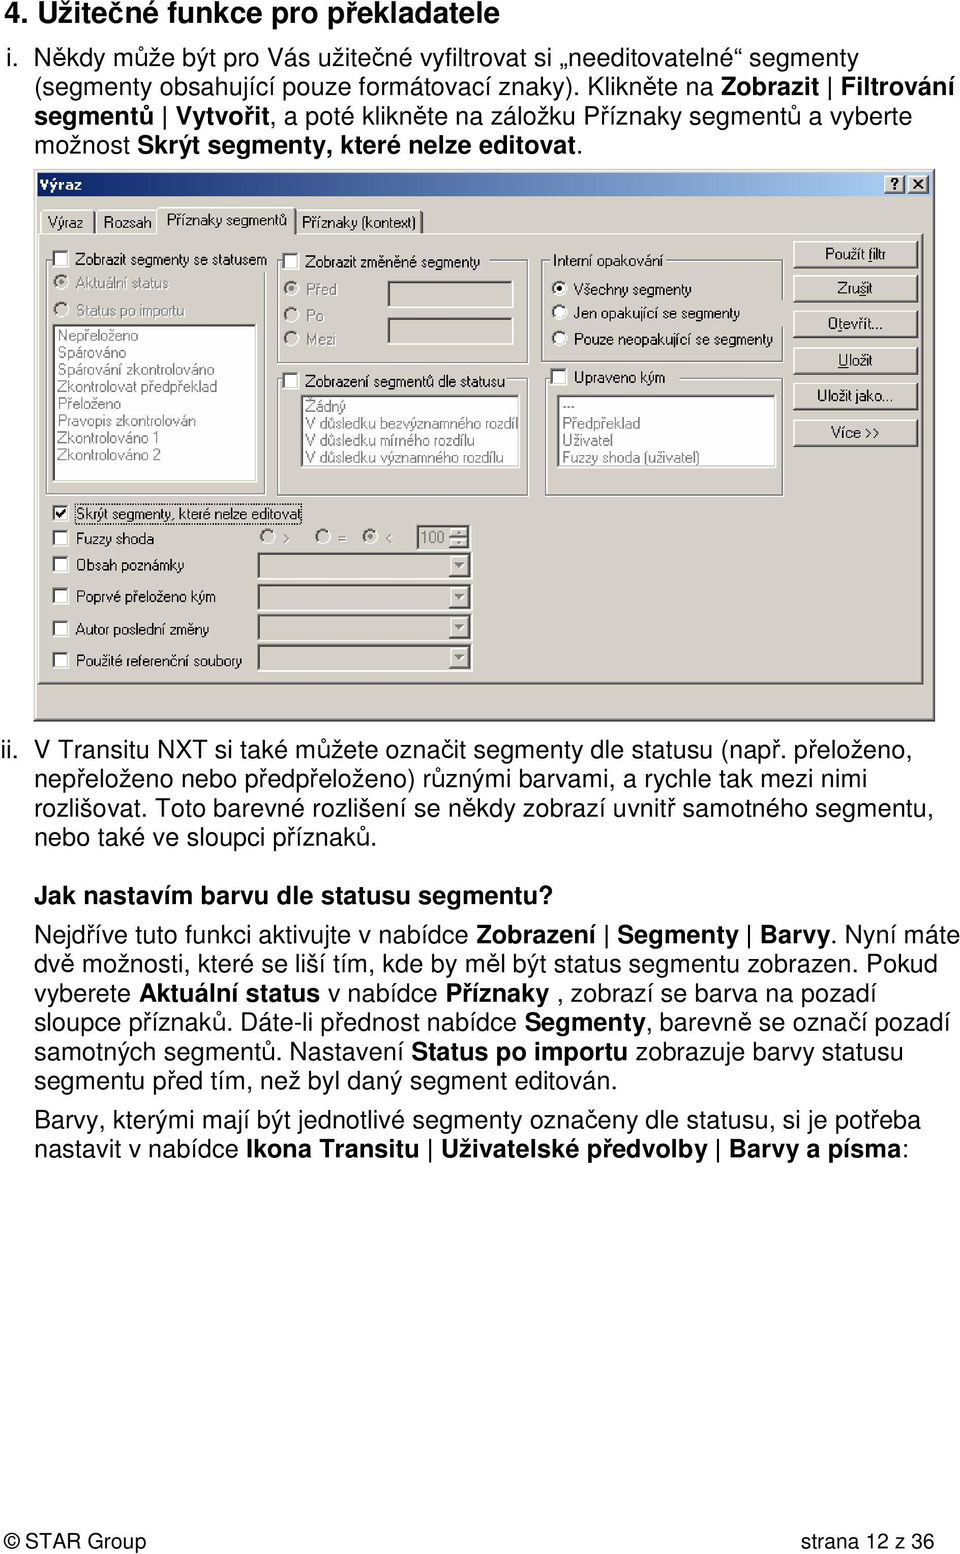 V Transitu NXT si také můžete označit segmenty dle statusu (např. přeloženo, nepřeloženo nebo předpřeloženo) různými barvami, a rychle tak mezi nimi rozlišovat.